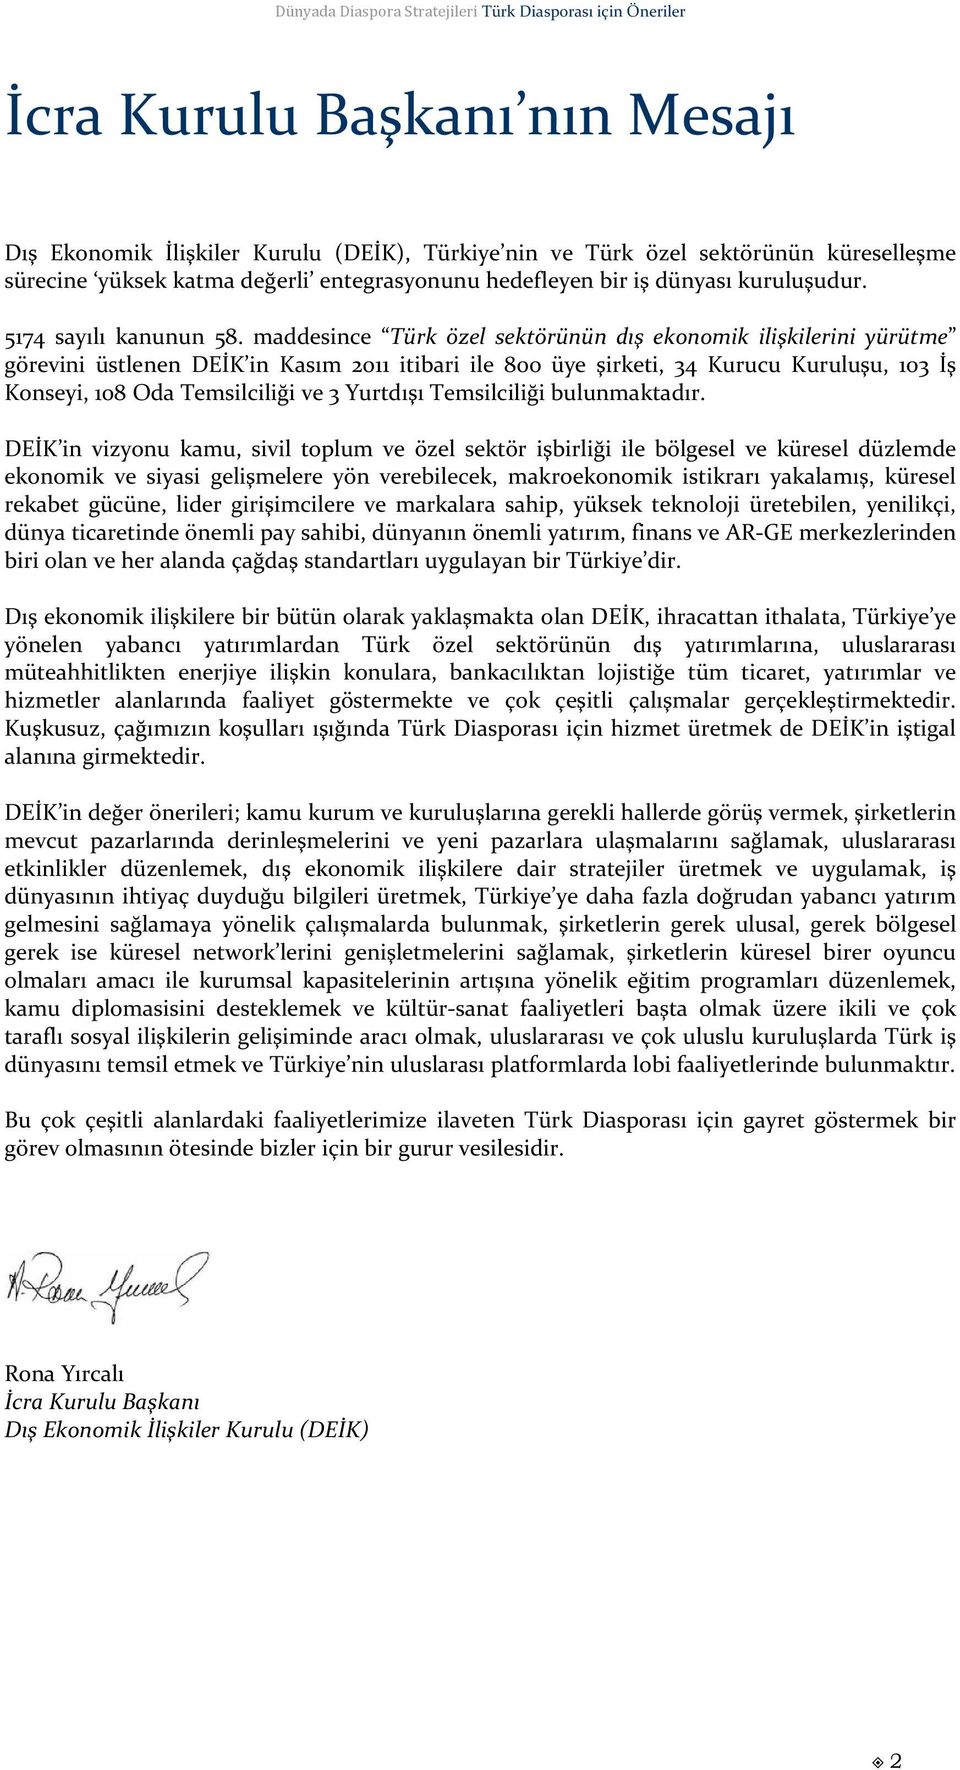 maddesince Türk özel sektörünün dış ekonomik ilişkilerini yürütme görevini üstlenen DEİK in Kasım 2011 itibari ile 800 üye şirketi, 34 Kurucu Kuruluşu, 103 İş Konseyi, 108 Oda Temsilciliği ve 3